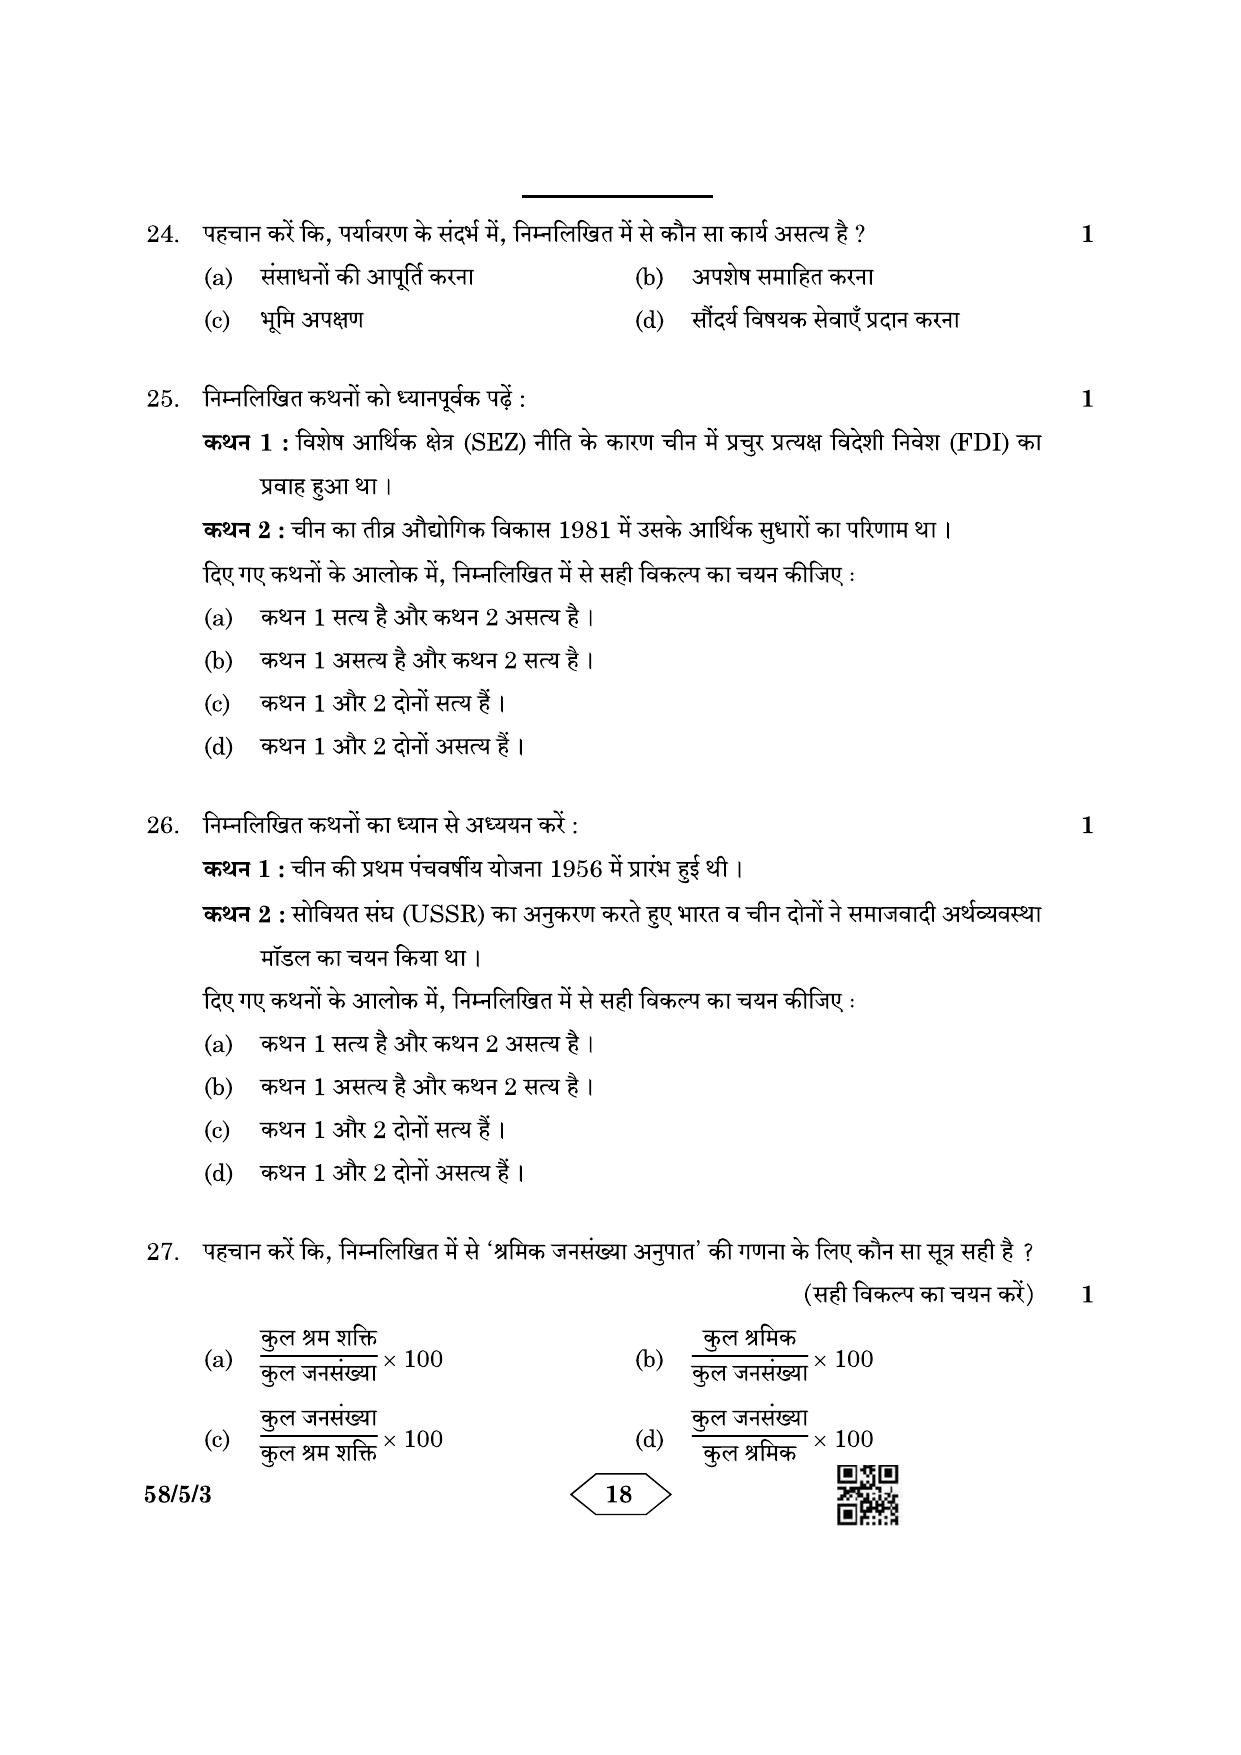 CBSE Class 12 58-5-3 Economics 2023 Question Paper - Page 18